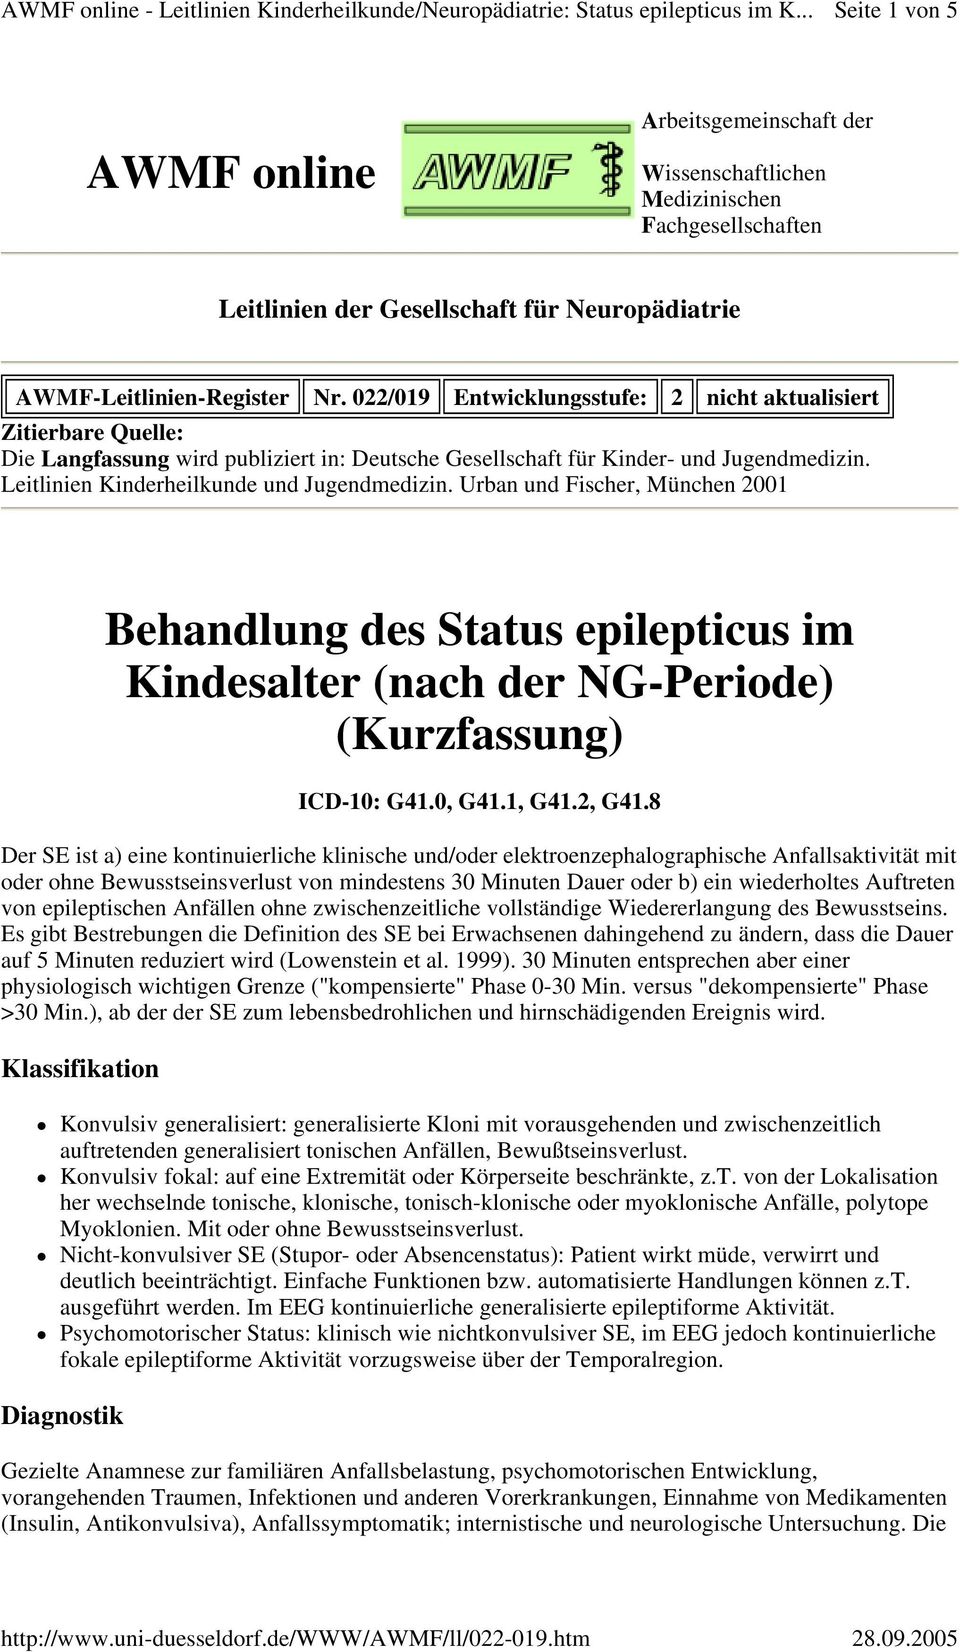 Leitlinien Kinderheilkunde und Jugendmedizin. Urban und Fischer, München 2001 Behandlung des Status epilepticus im Kindesalter (nach der NG-Periode) (Kurzfassung) ICD-10: G41.0, G41.1, G41.2, G41.